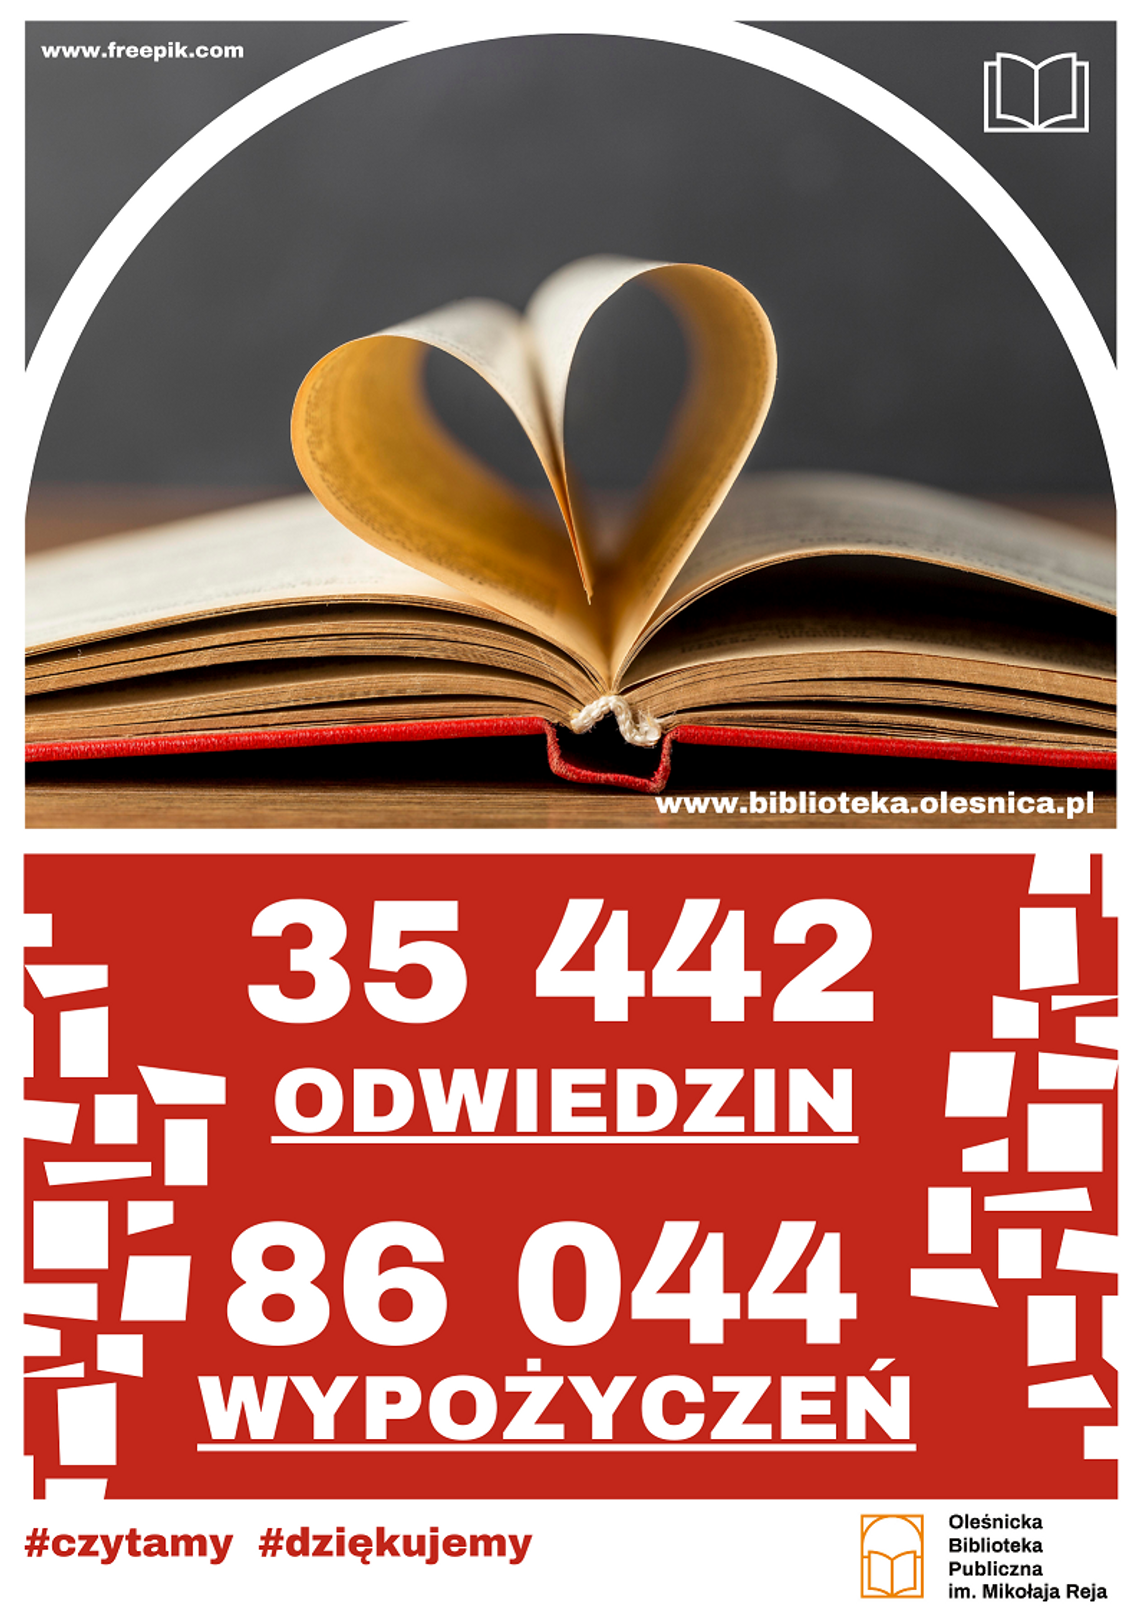 35 tysięcy odwiedzin w Oleśnickiej Bibliotece Publicznej